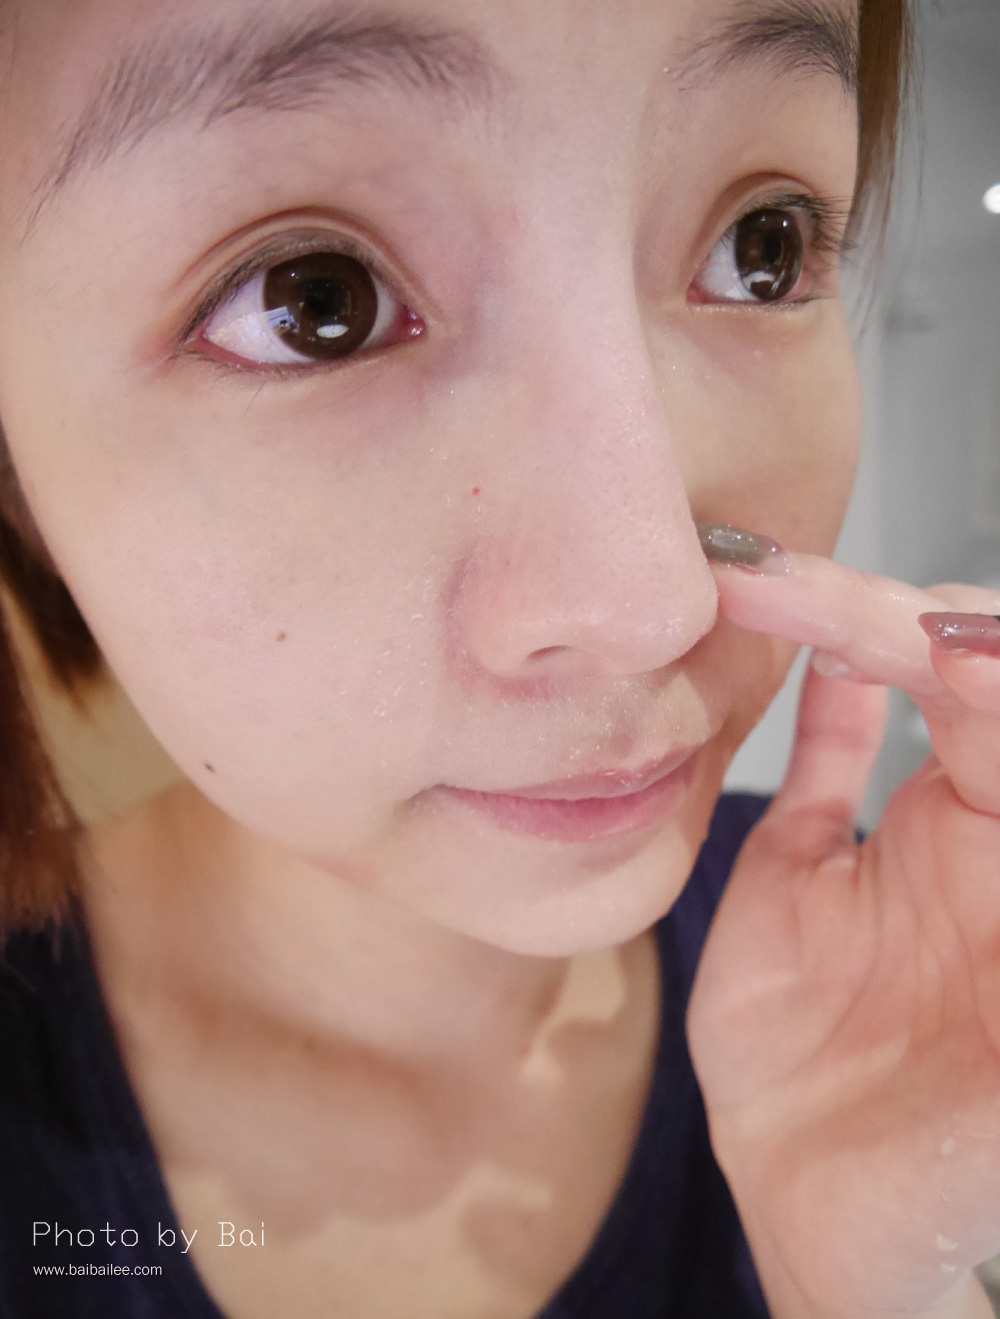 [保養] 毛孔乾淨看的到!10分鐘讓毛孔乾乾淨淨,對抗粉刺新選擇-聖克萊爾 深層淨膚泥膜